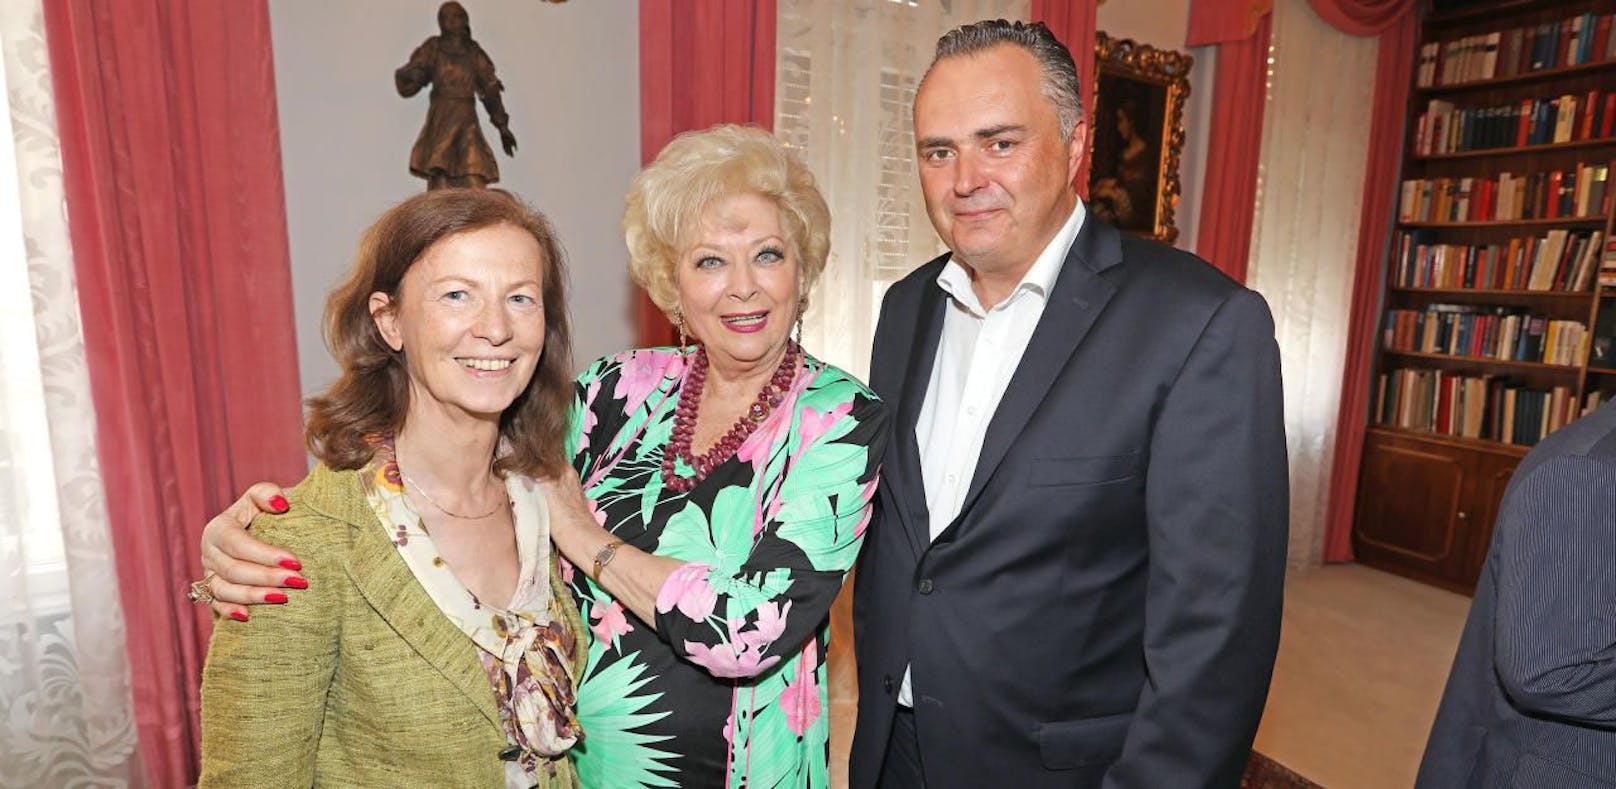 Sarata empfing Doskozil und Wiens neue First Lady